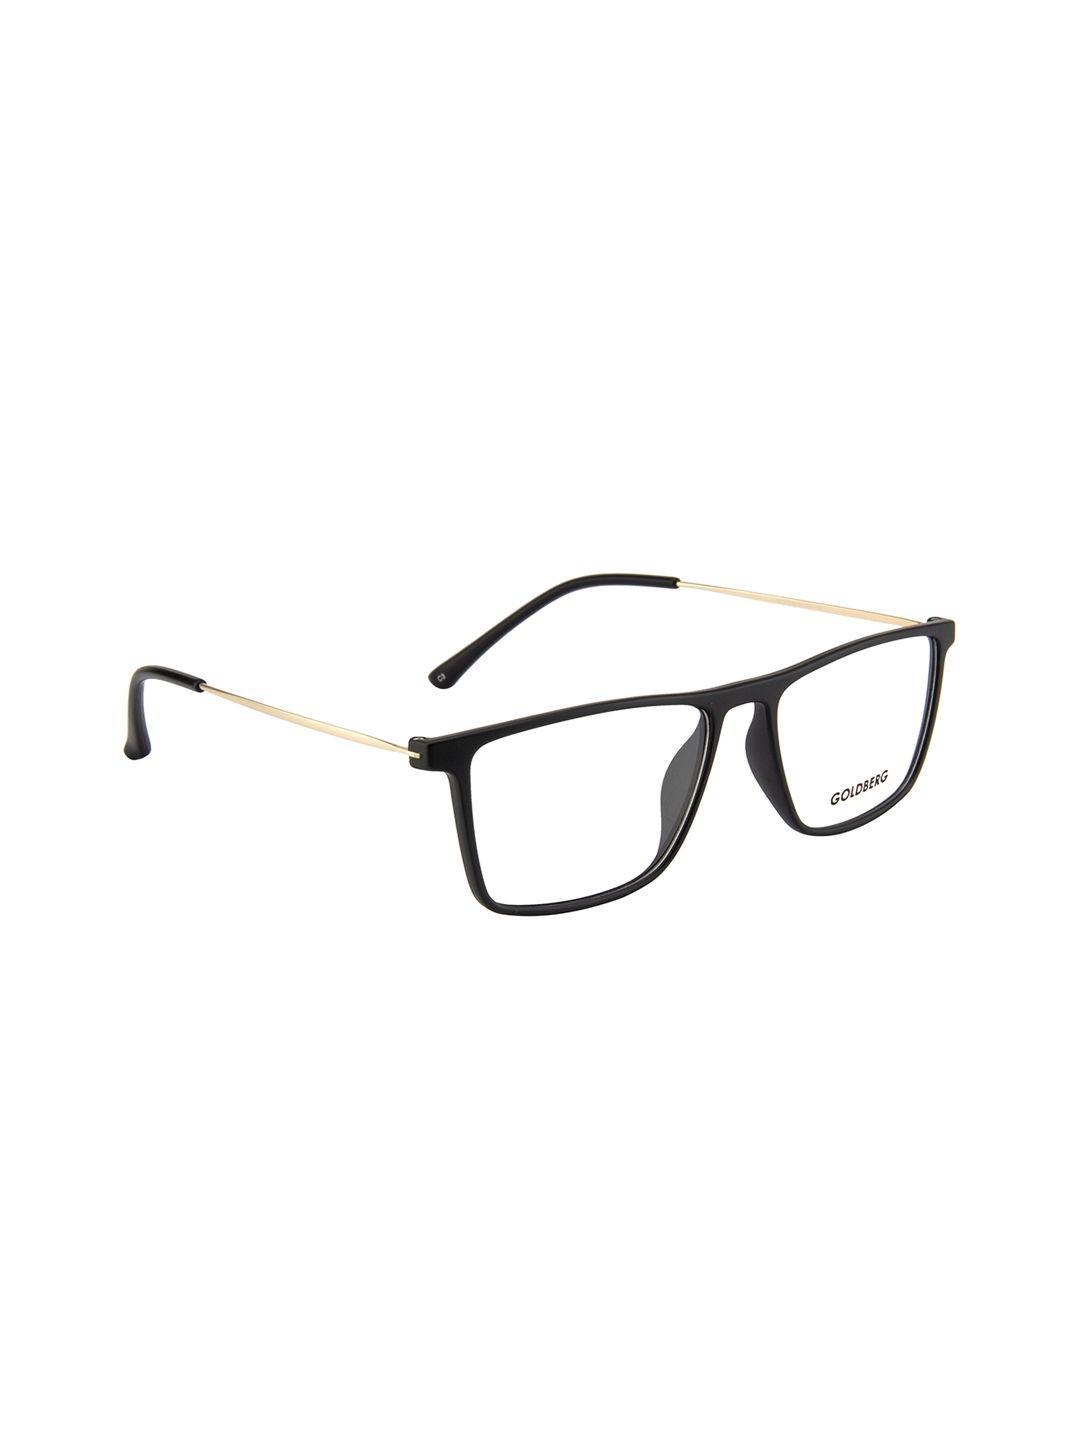 gold berg unisex black & gold-toned solid full rim wayfarer frames eyeglasses